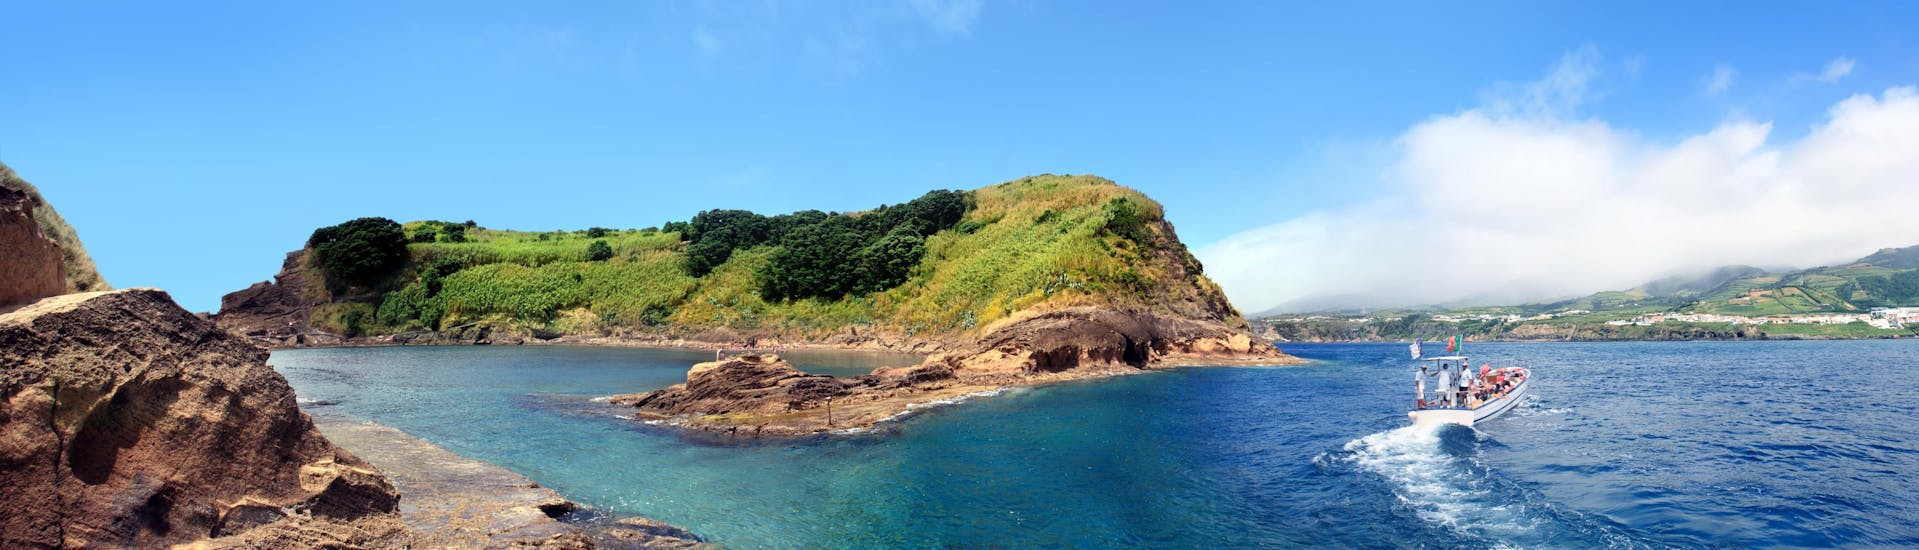 Blick auf die kleine Insel Vila Franca do Campo, ein beliebtes Ziel für Bootsausflüge auf den Azoren.